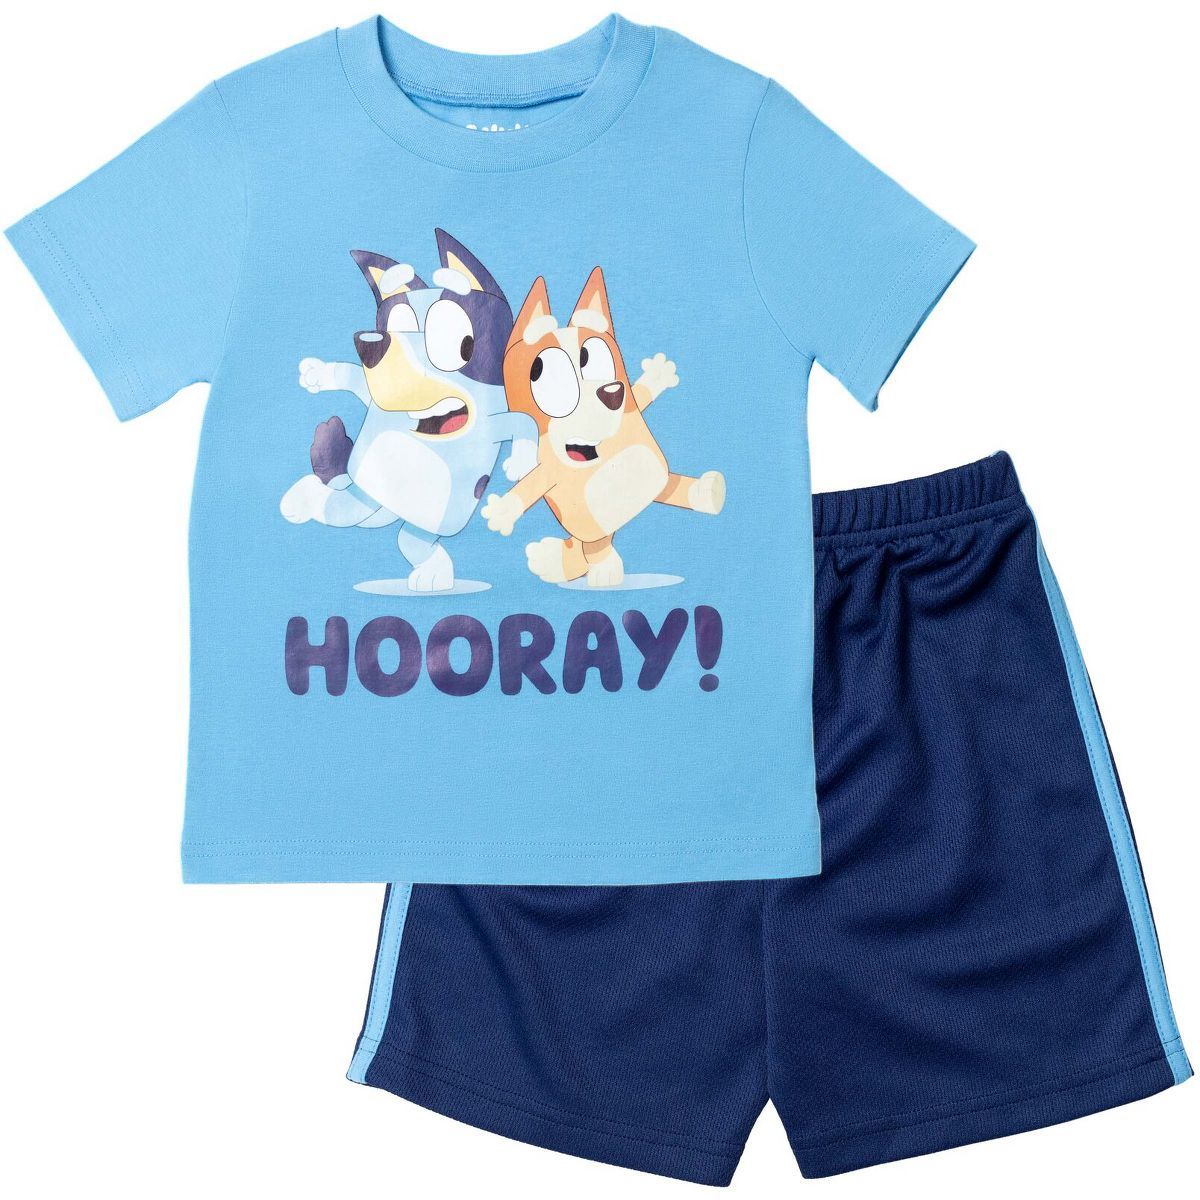 Bluey Bingo T-Shirt and Mesh Shorts Outfit Set Toddler to Big Kid | Target